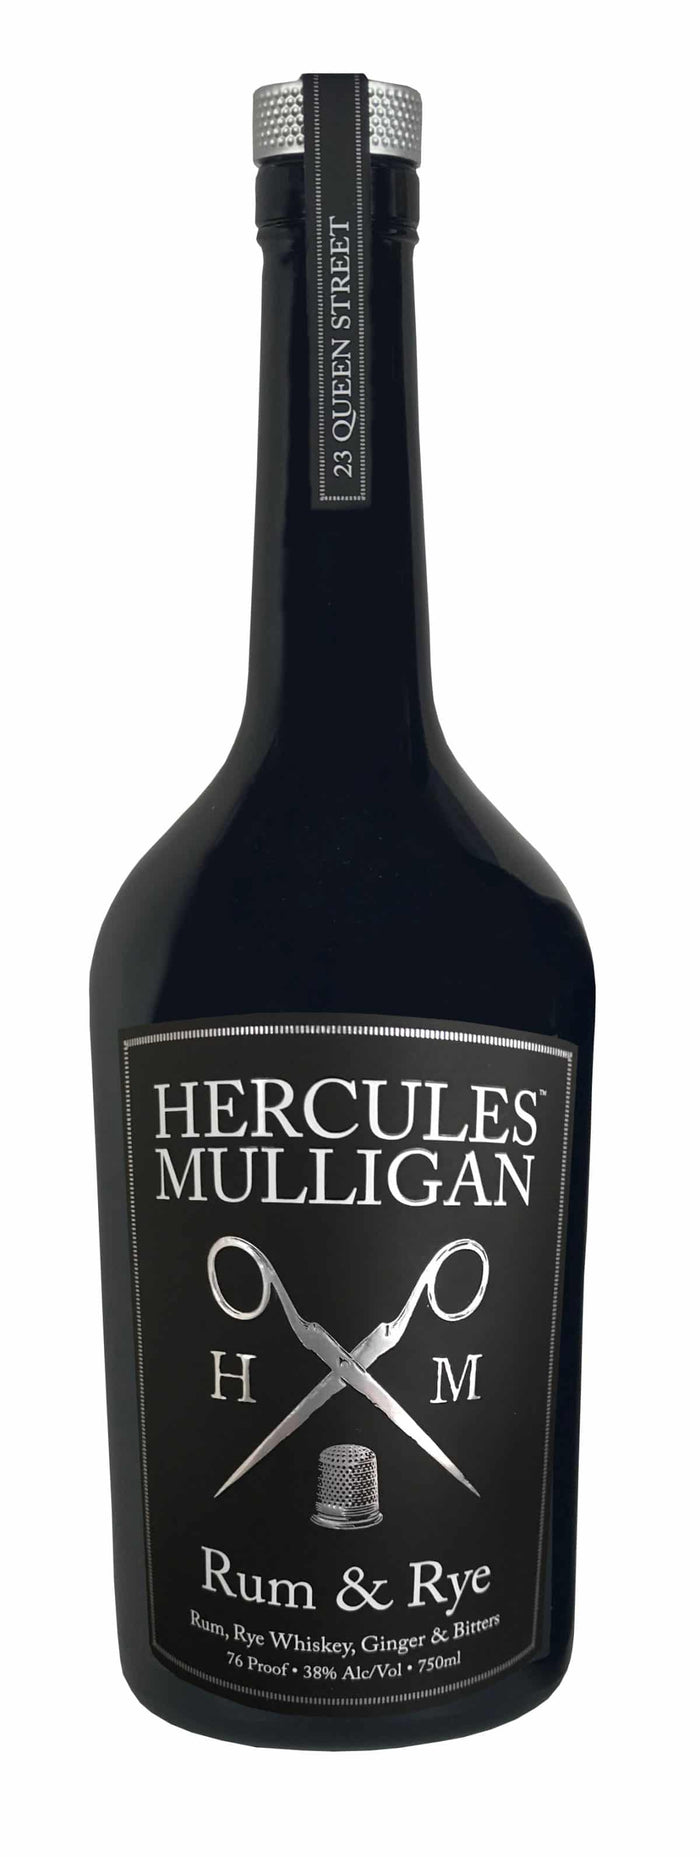 Hercules Mulligan Rum Rye Whiskey